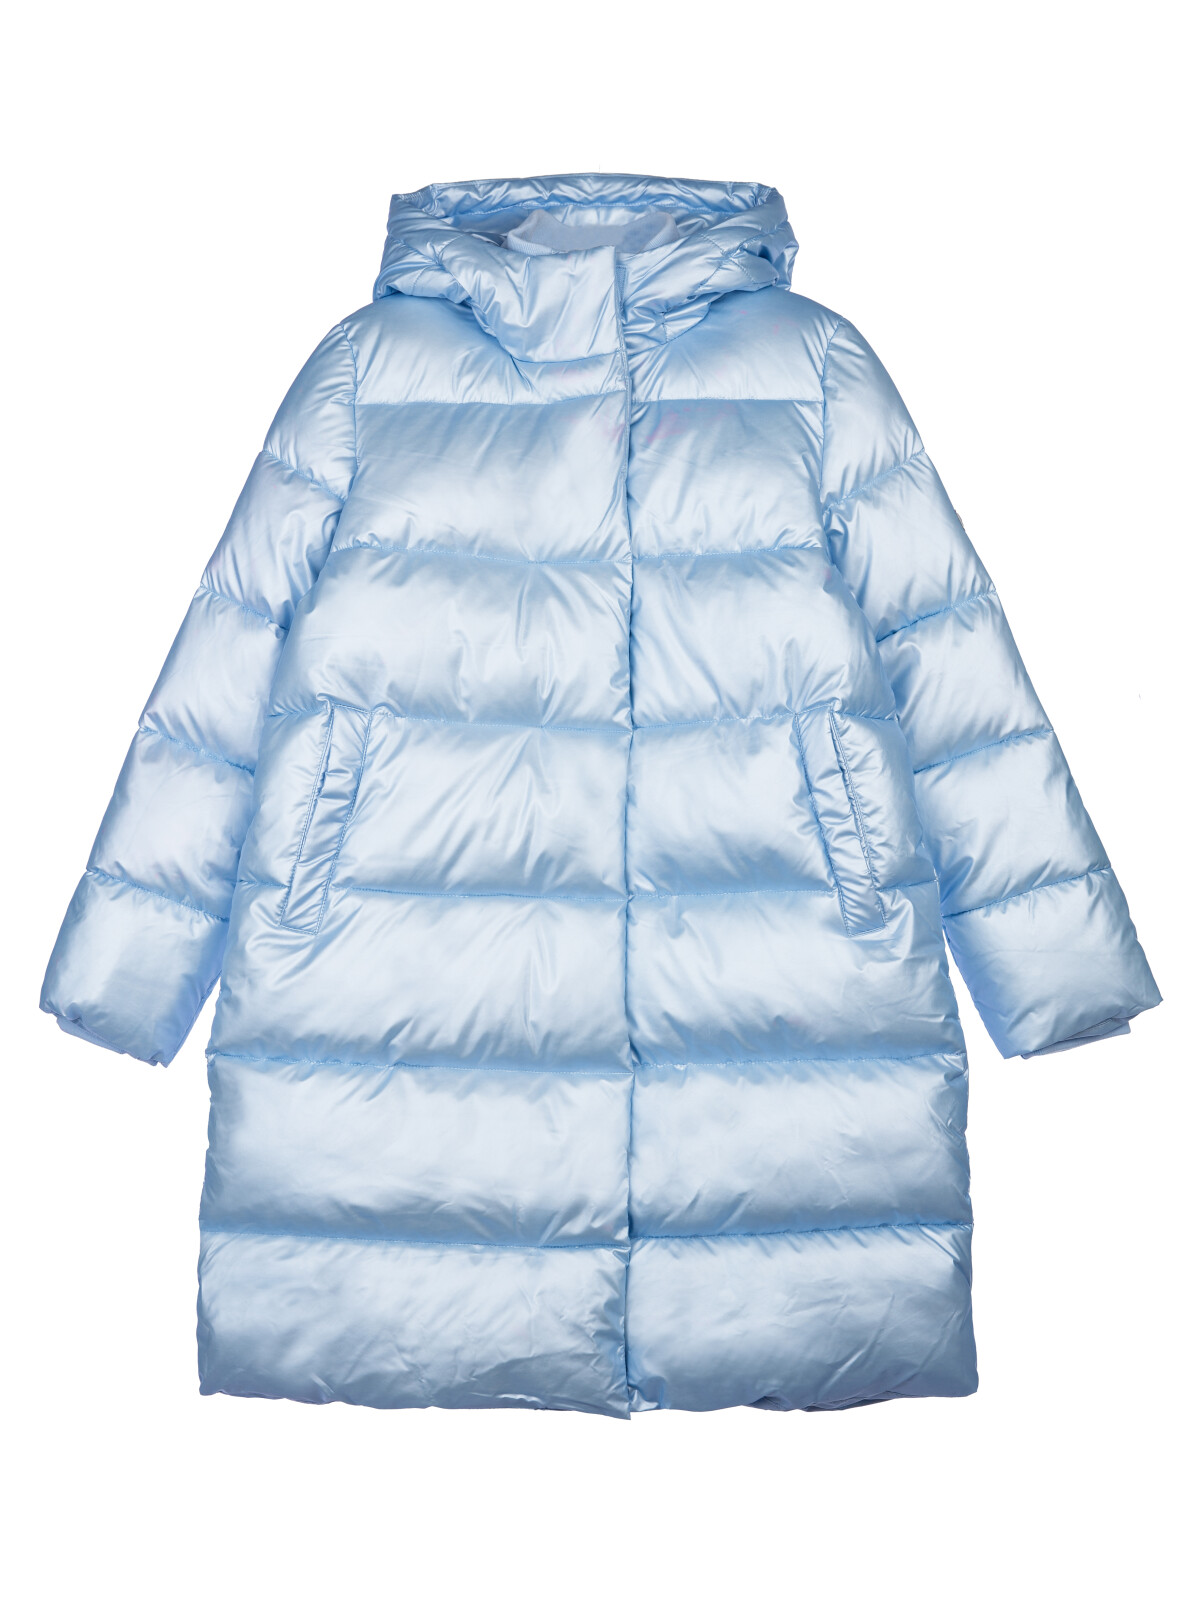 Пальто текстильное с полиуретановым покрытием для девочек PlayToday, голубой, 170